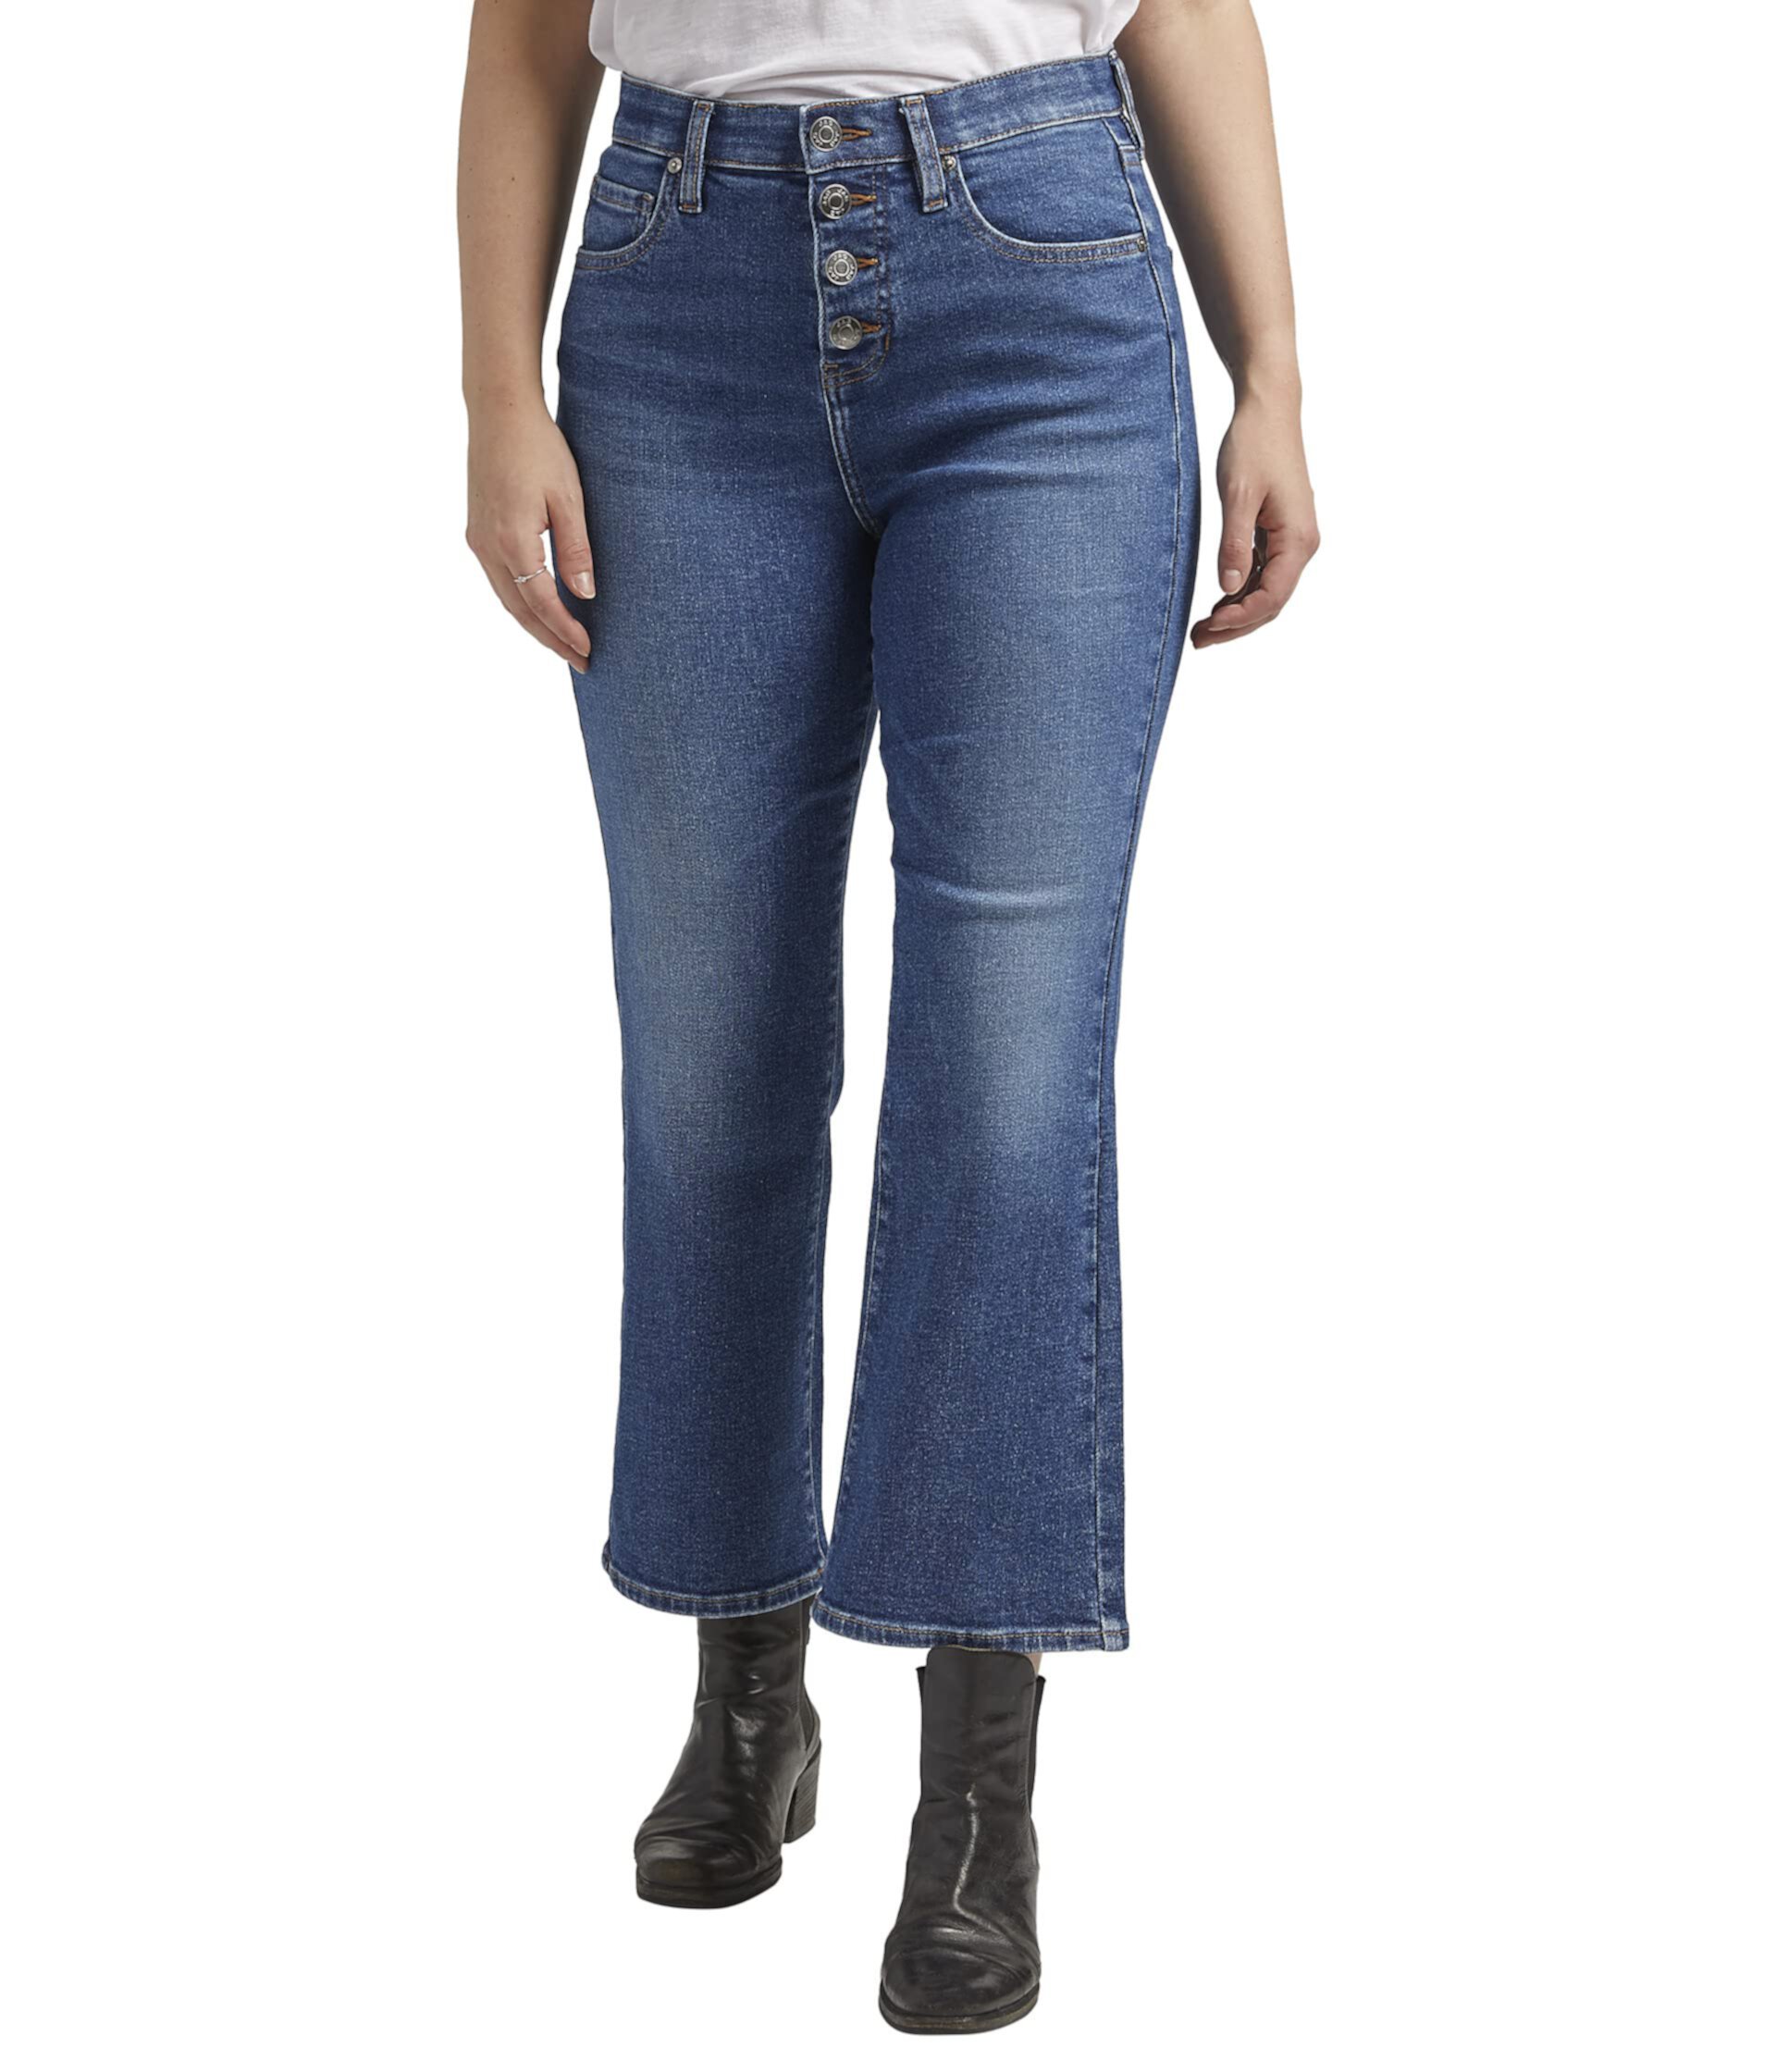 Укороченные джинсы Bootcut с высокой посадкой Phoebe Jag Jeans